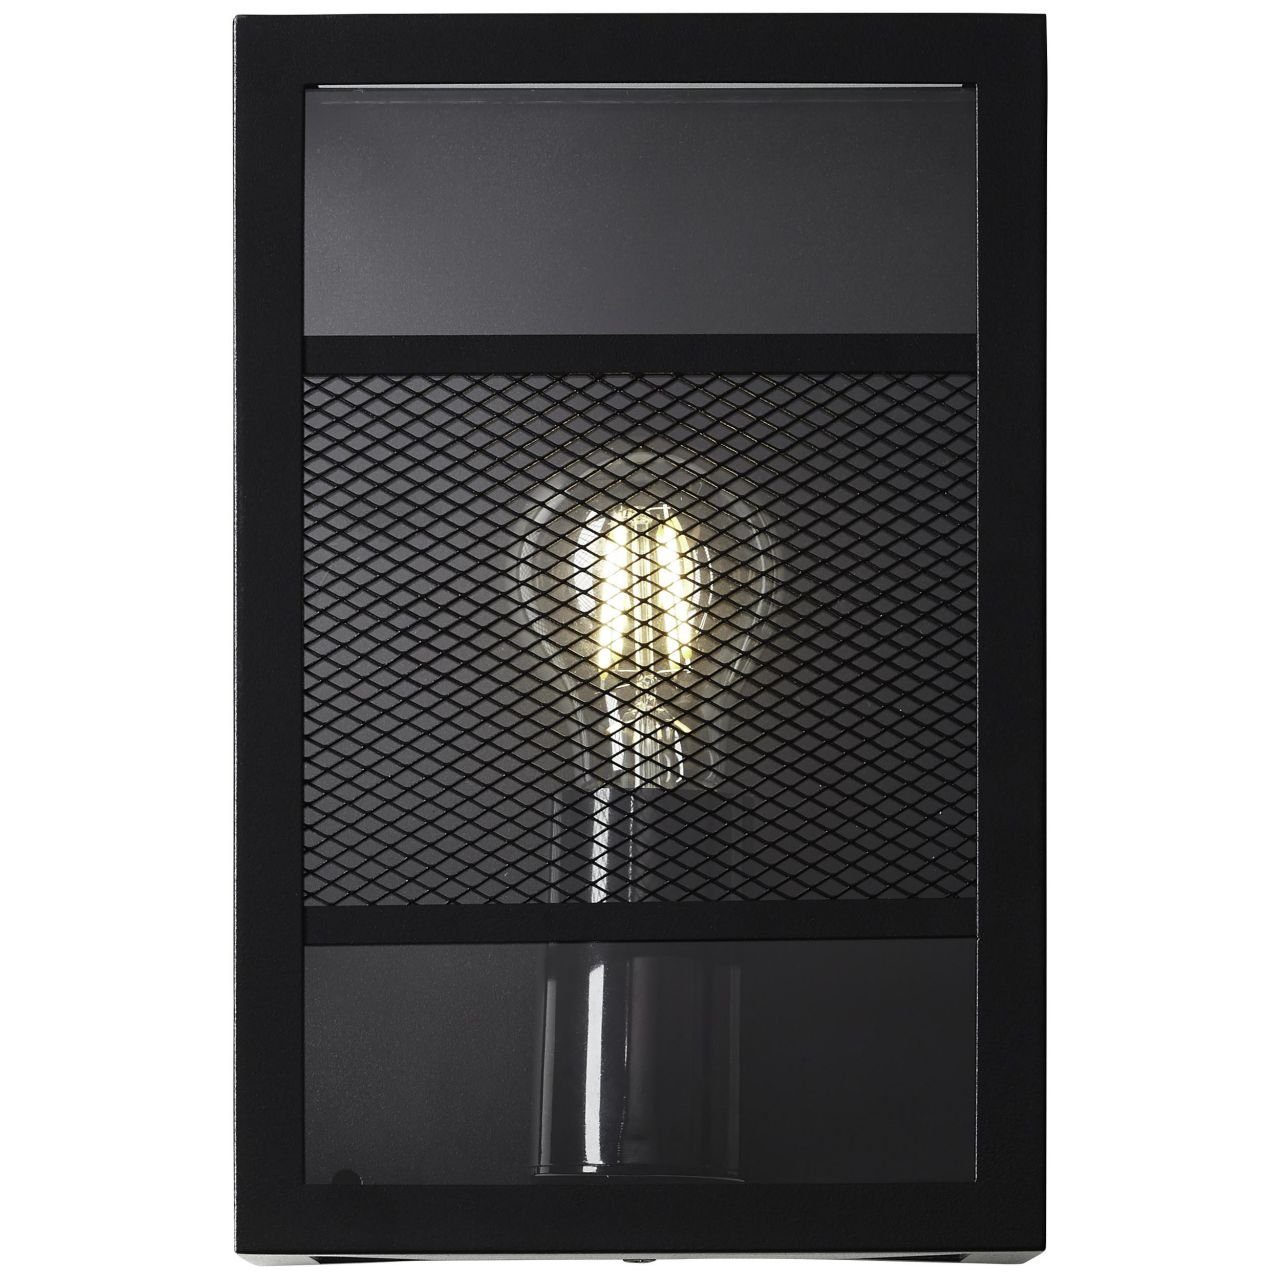 Brilliant LED Außen-Wandleuchte Getta, Lampe, Metall/Kunststoff, A60, E27 schwarz, 1x Außenwandleuchte Getta